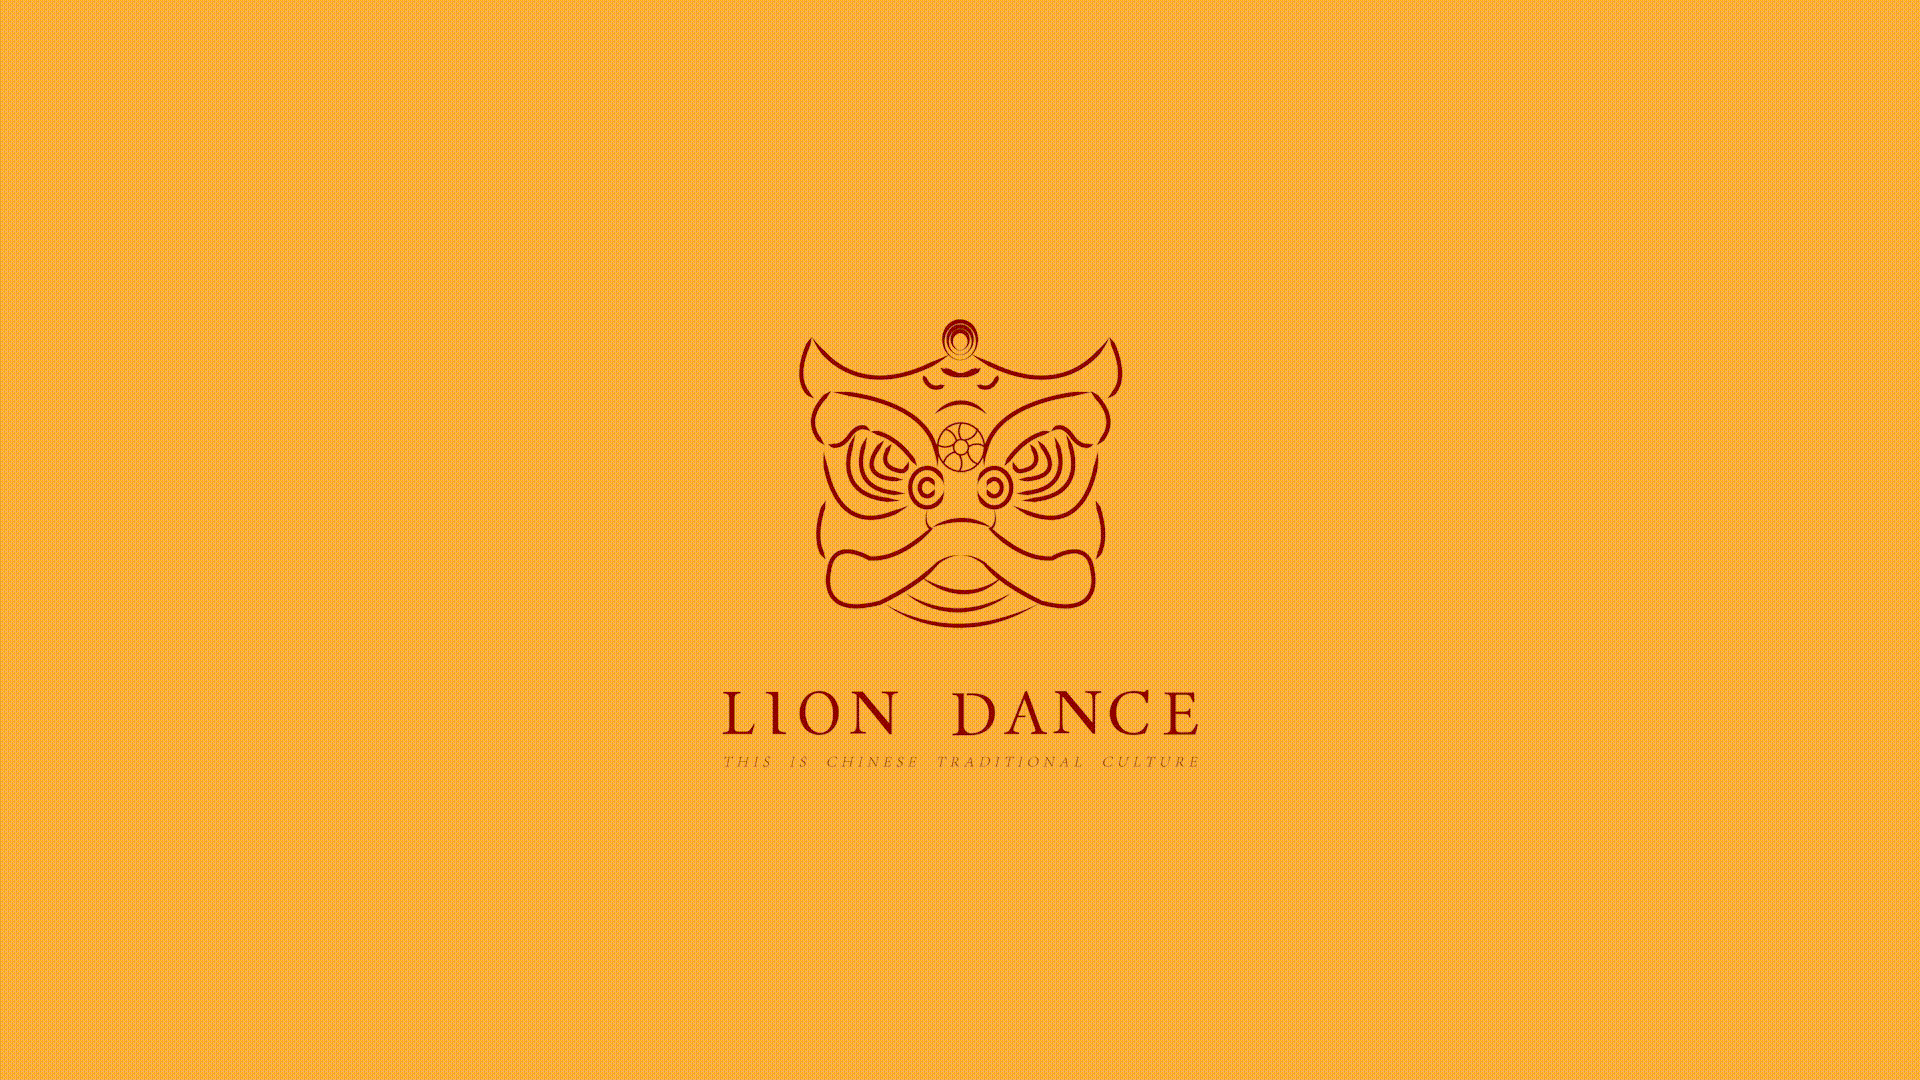 liondance | 这就是中国传统文化